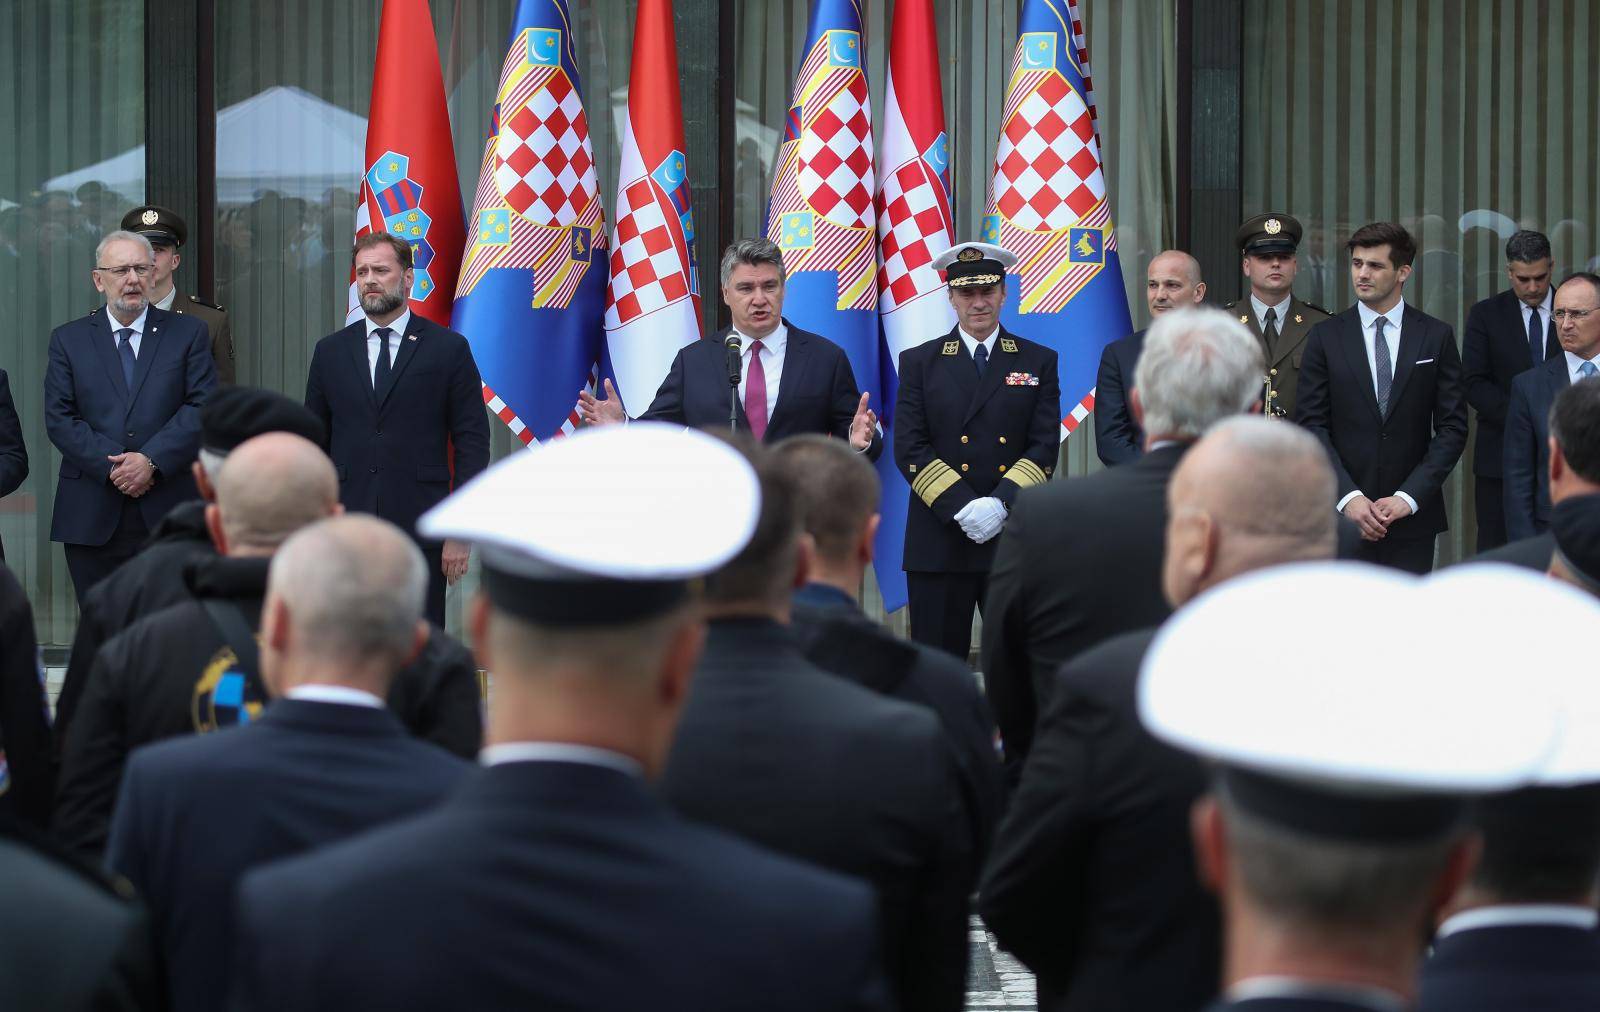 Predsjednik na Pantovčaku upriličio prijam u prigodi obilježavanja Dana Hrvatske vojske